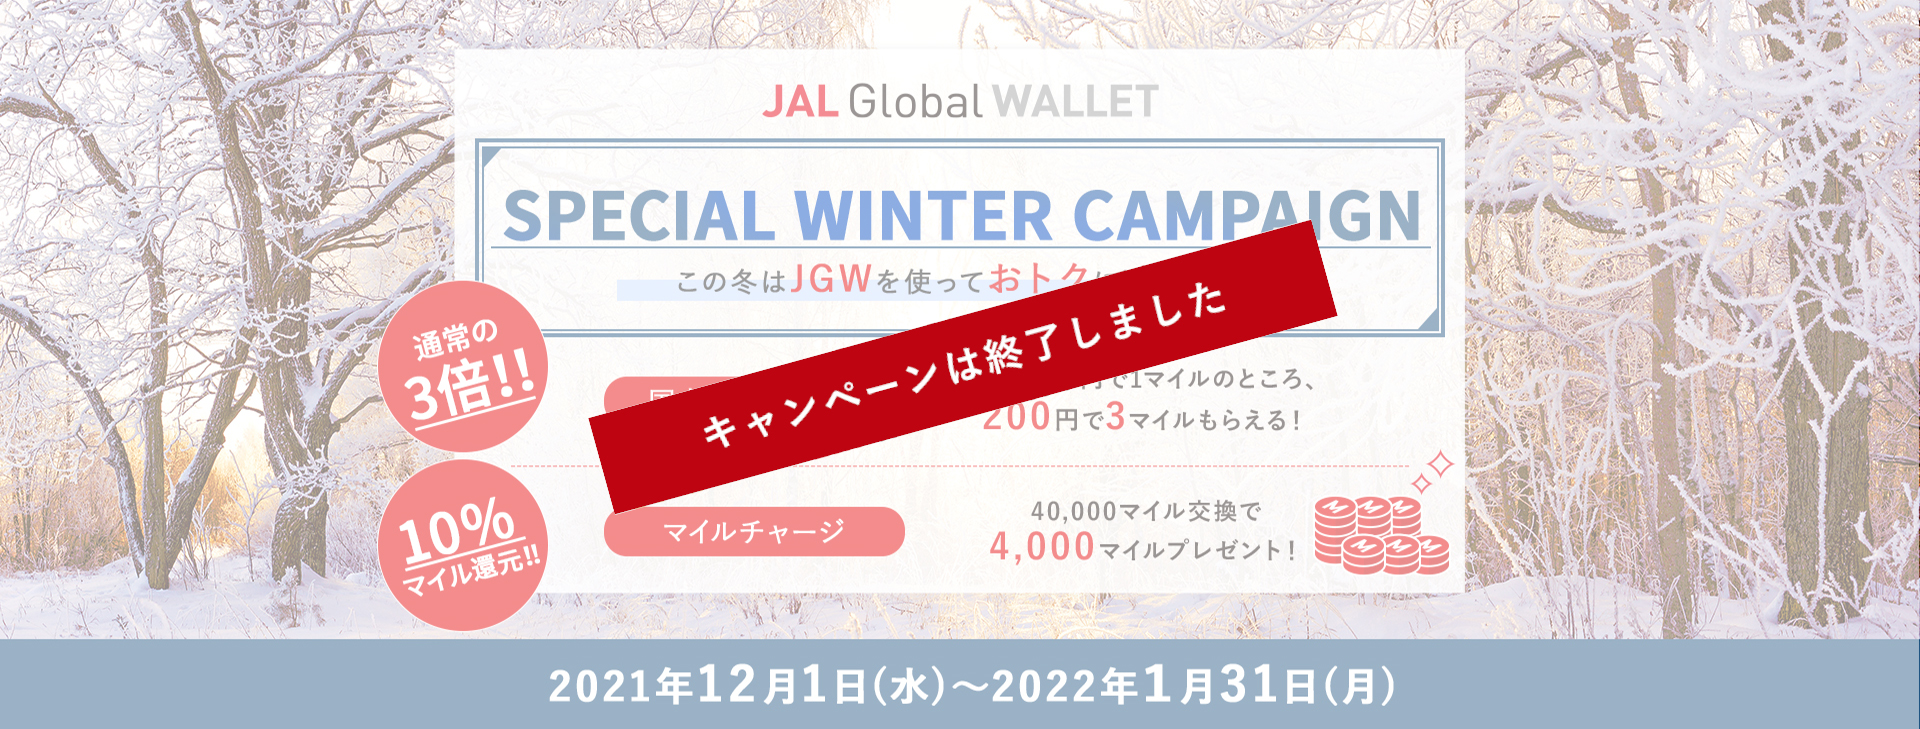 JAL Global WALLET Special Winter Campaign この冬はJGWを使っておトクに過ごそう！通常の3倍！！国内ショッピング　通常200円で1マイルのところ、200円で3マイルもらえる！　10％マイル還元！！マイルチャージ　40,000マイル交換で4,000マイルプレゼント！2021年12月1日（水）～2022年1月31日（月）